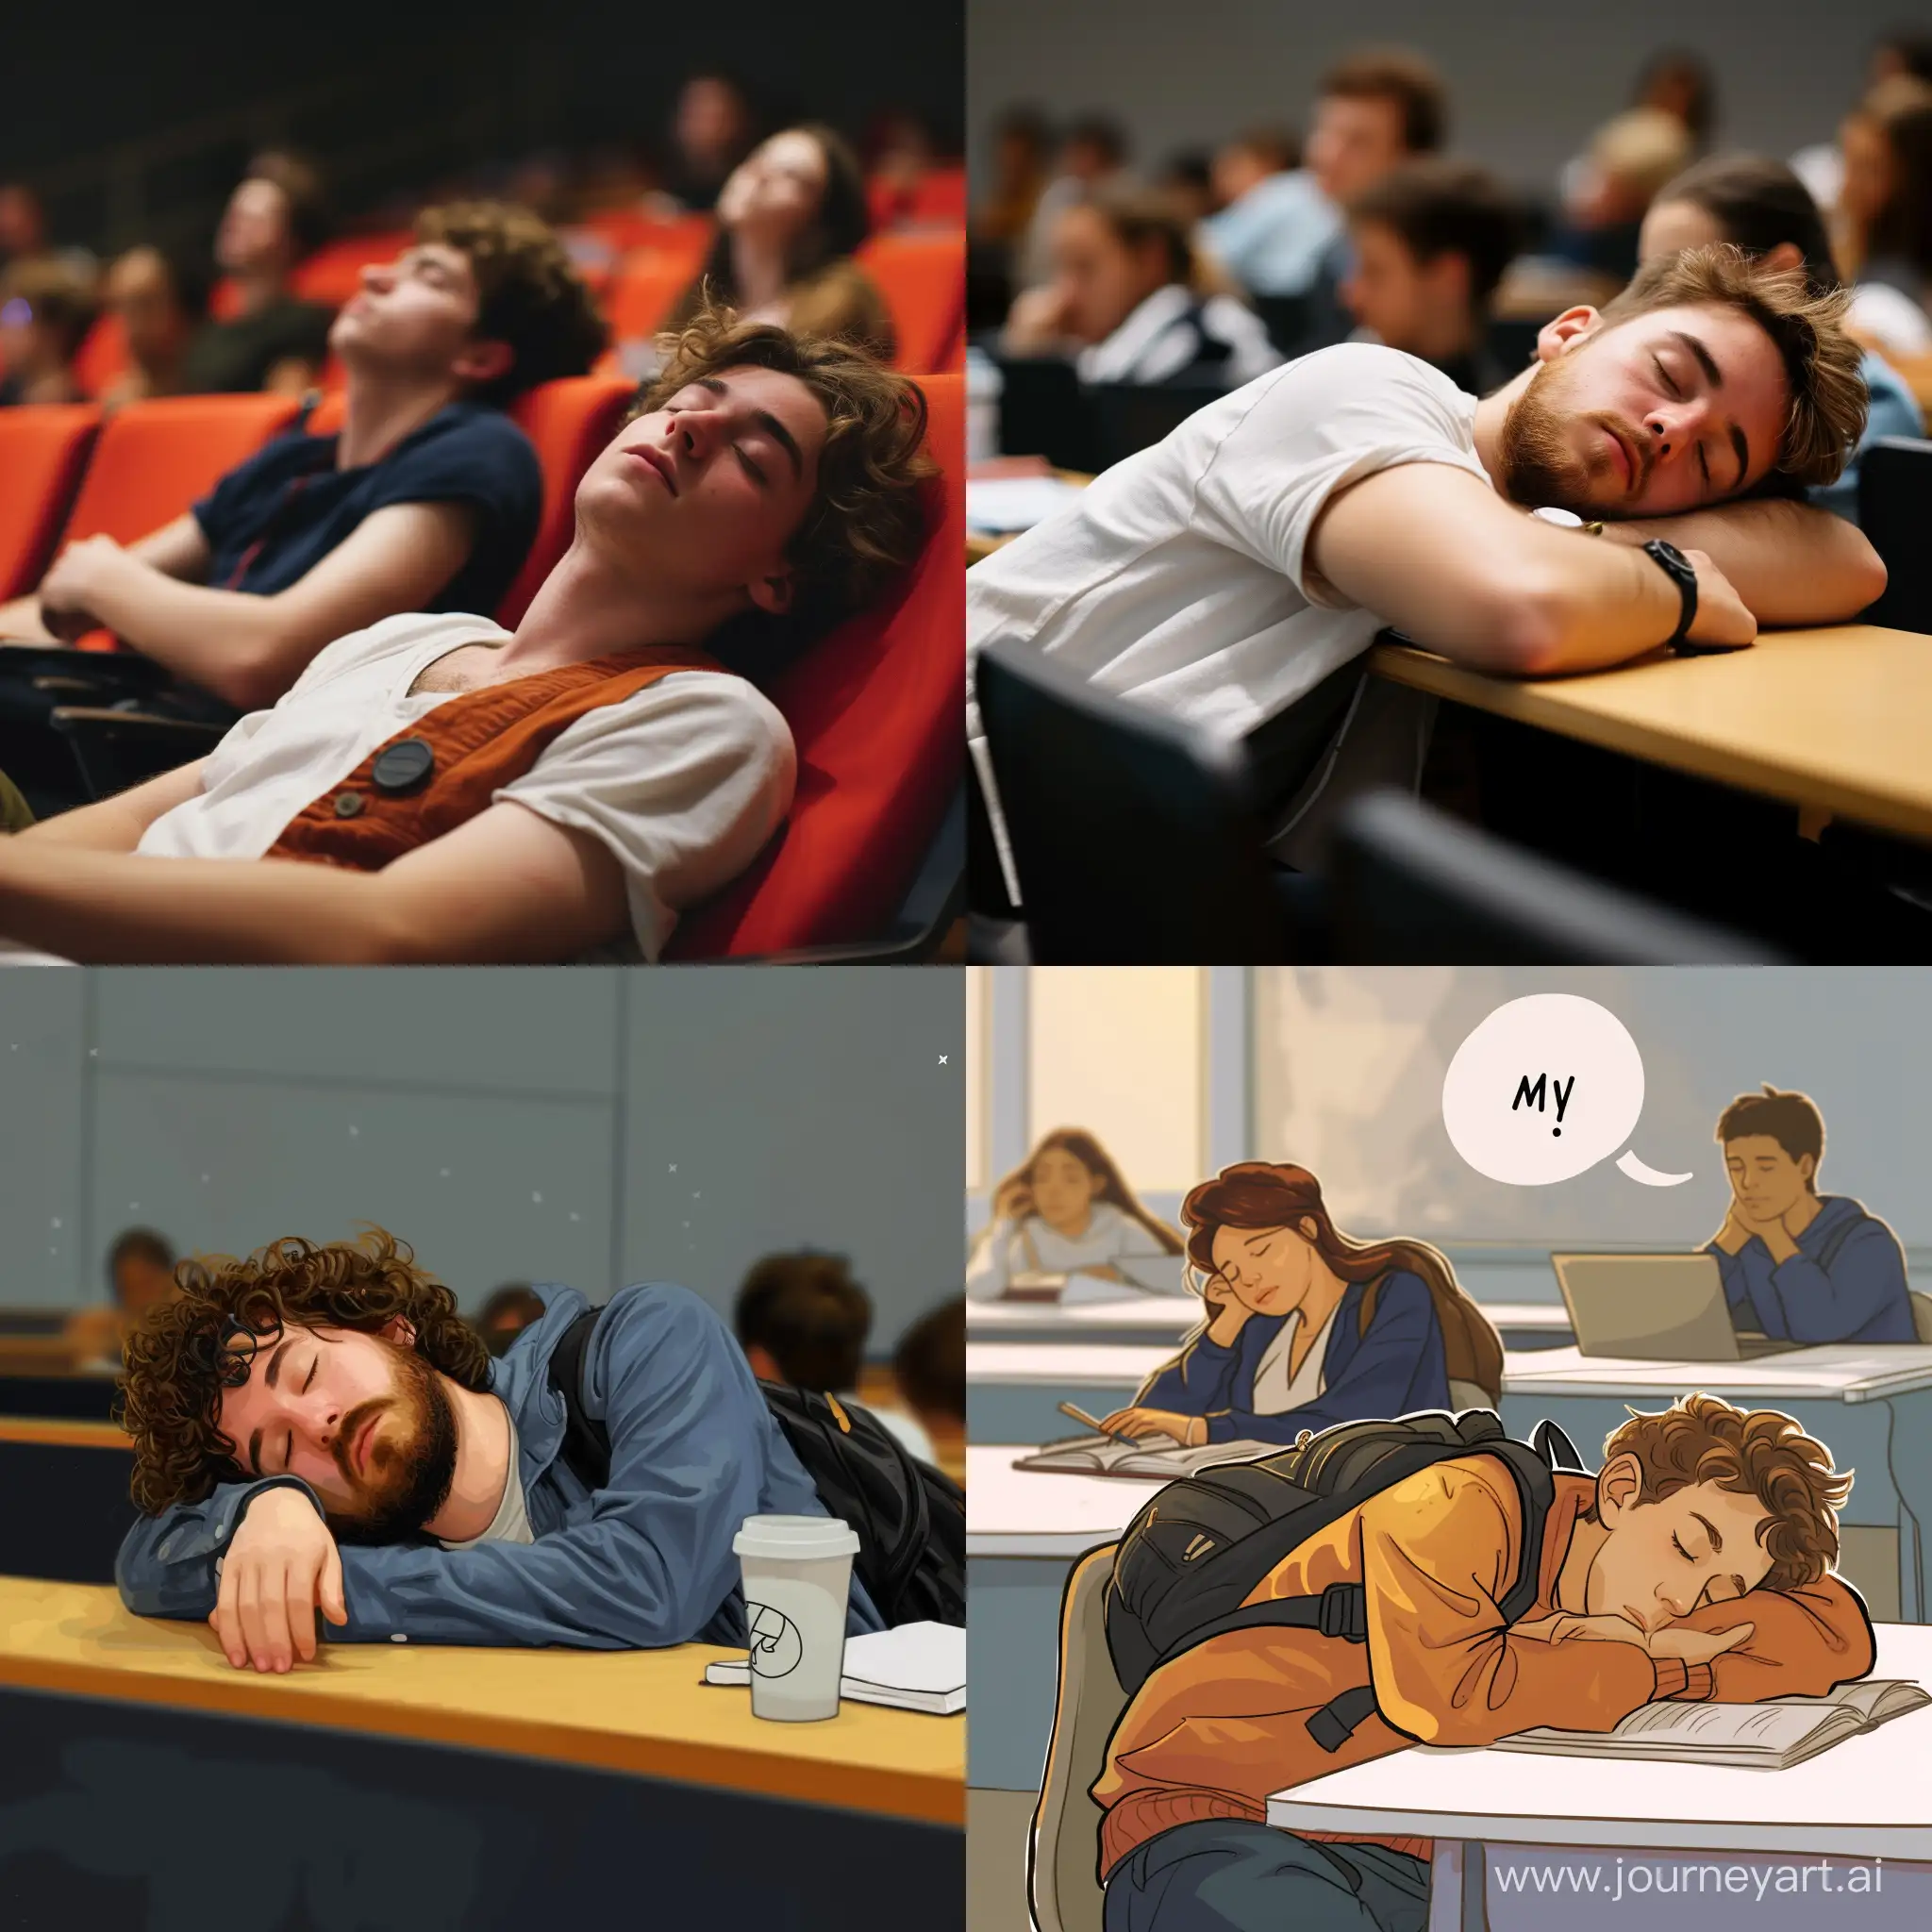 Картинка: Смешной студент падает во сне на лекции
Подпись: "Моя университетская жизнь в одном меме: когда ты пытаешься удержаться на лекции, но сон не щадит"